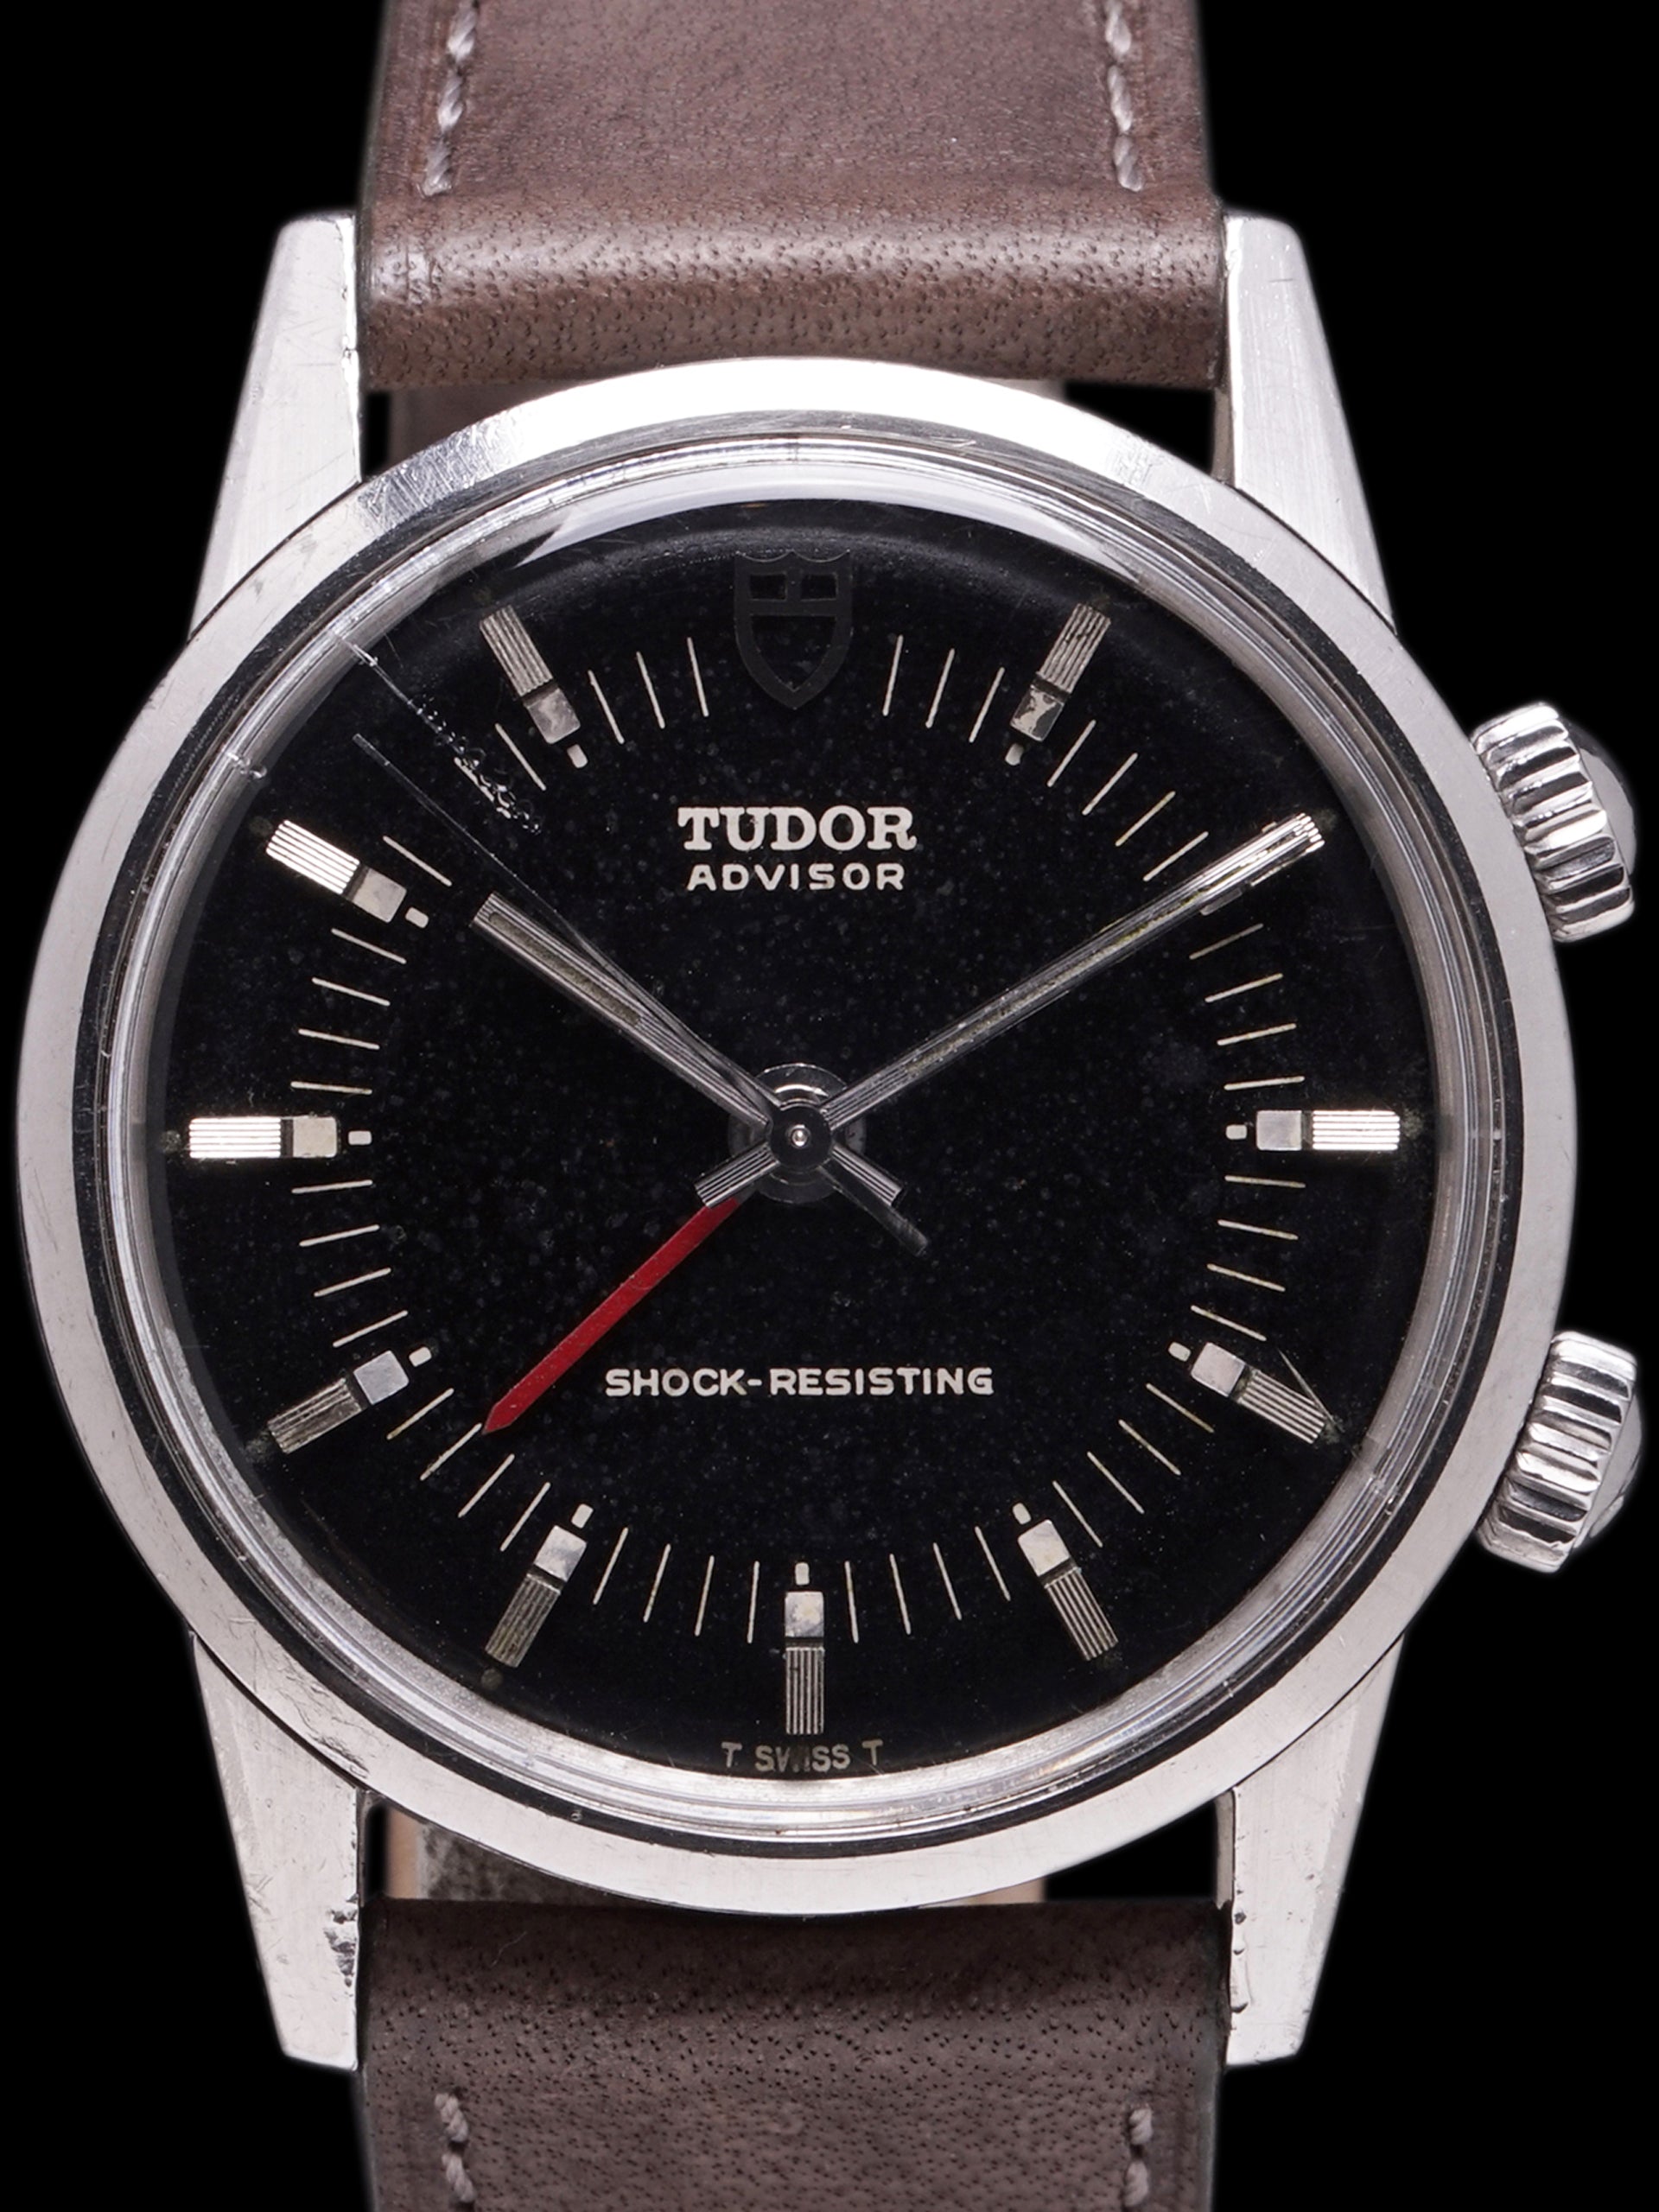 1982 Tudor Advisor Alarm (Ref. 10050) Black Dial